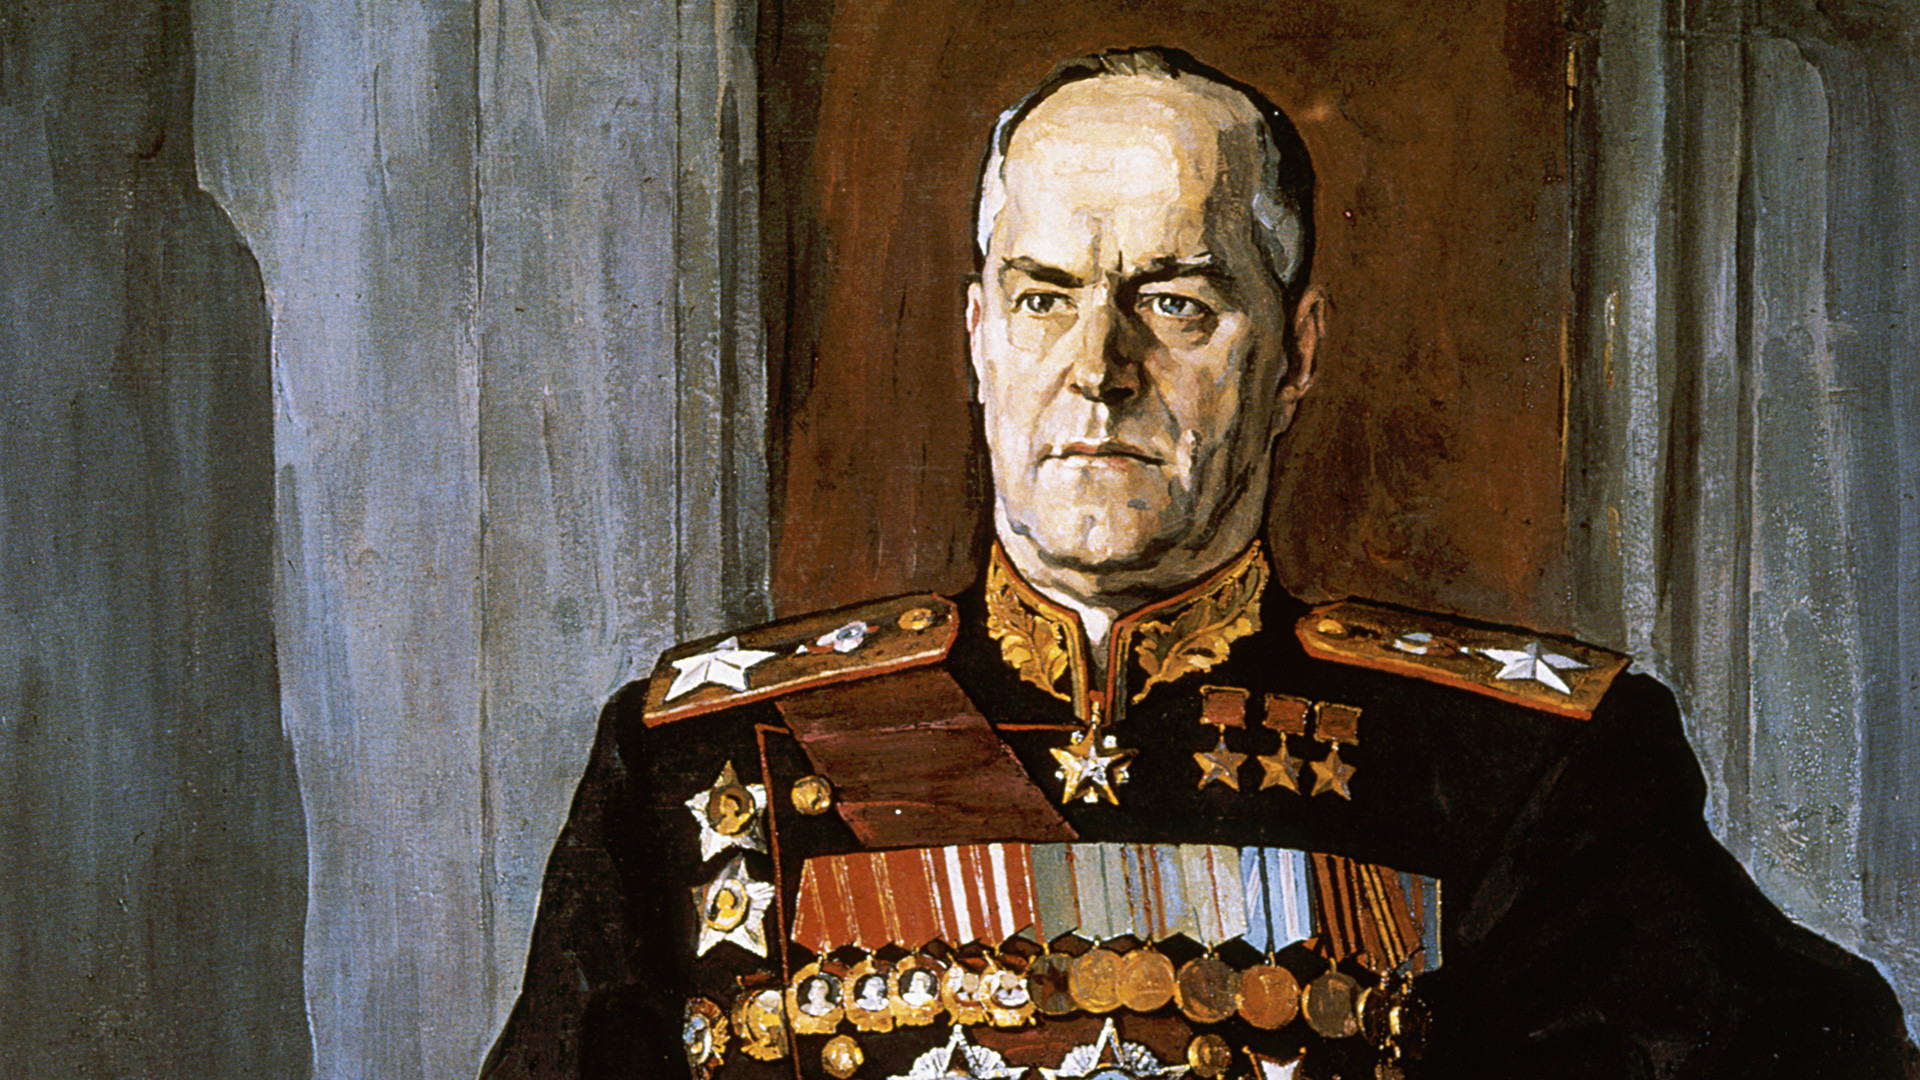 ゲオルギー・コンスタンチーノヴィチ・ジューコフ元帥の肖像画。パーヴェル・コリン作。